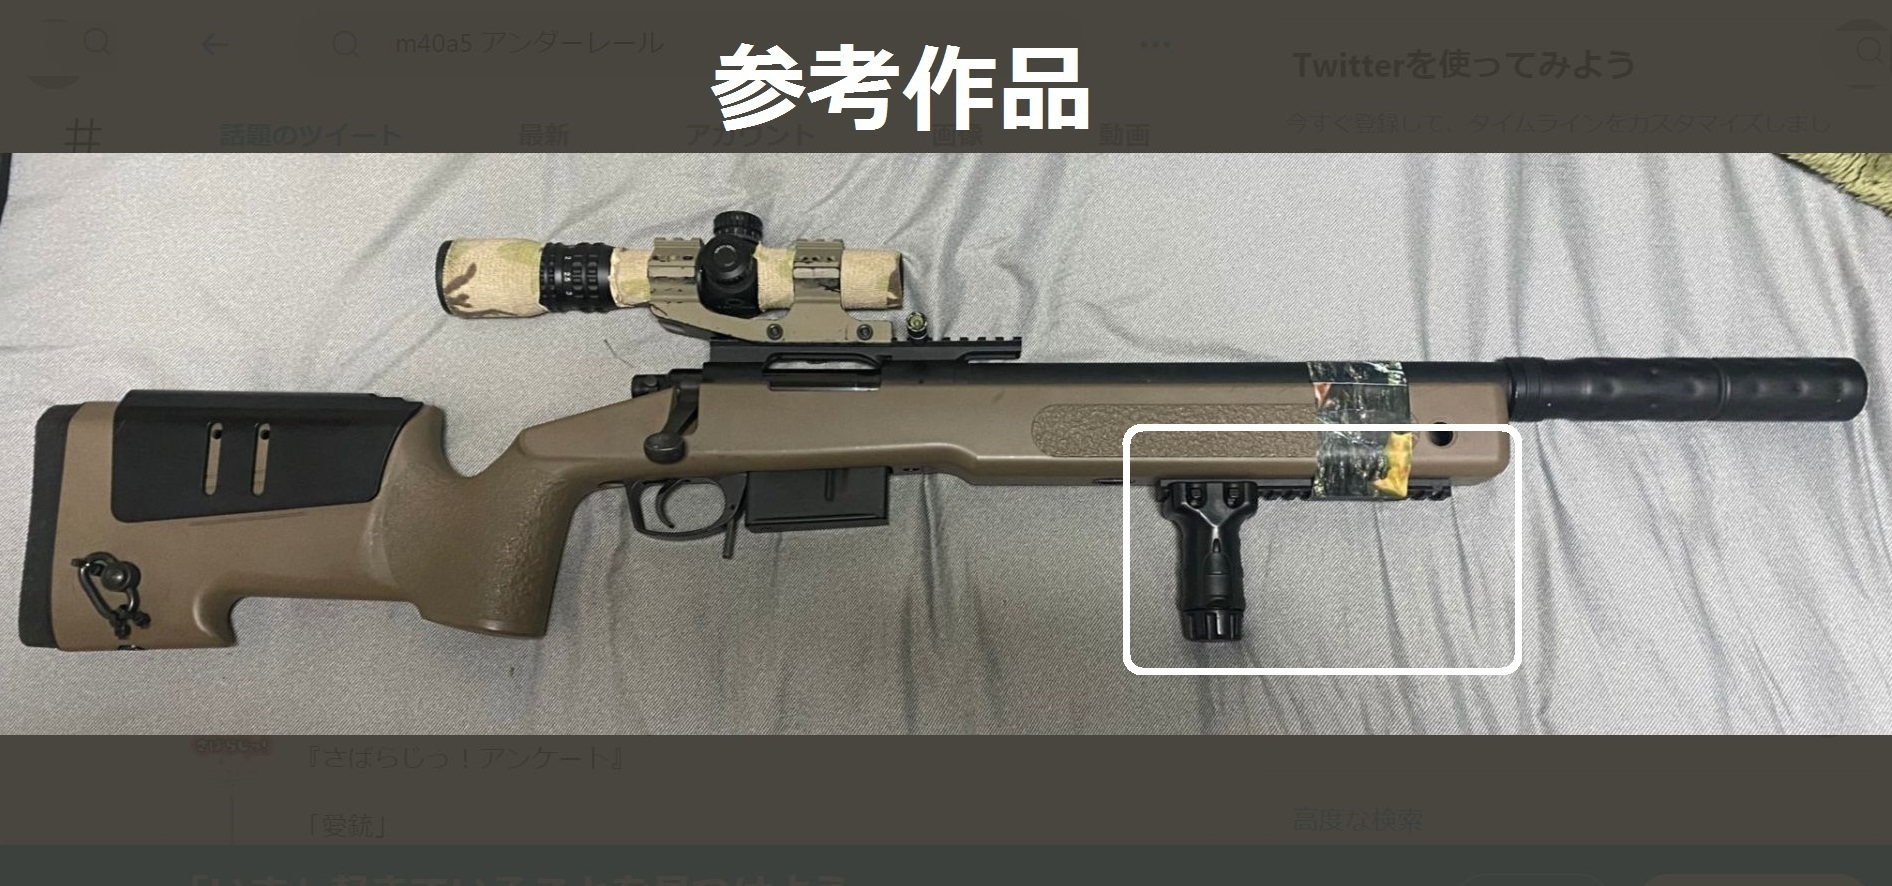 東京マルイ M40A5 カスタム - その他